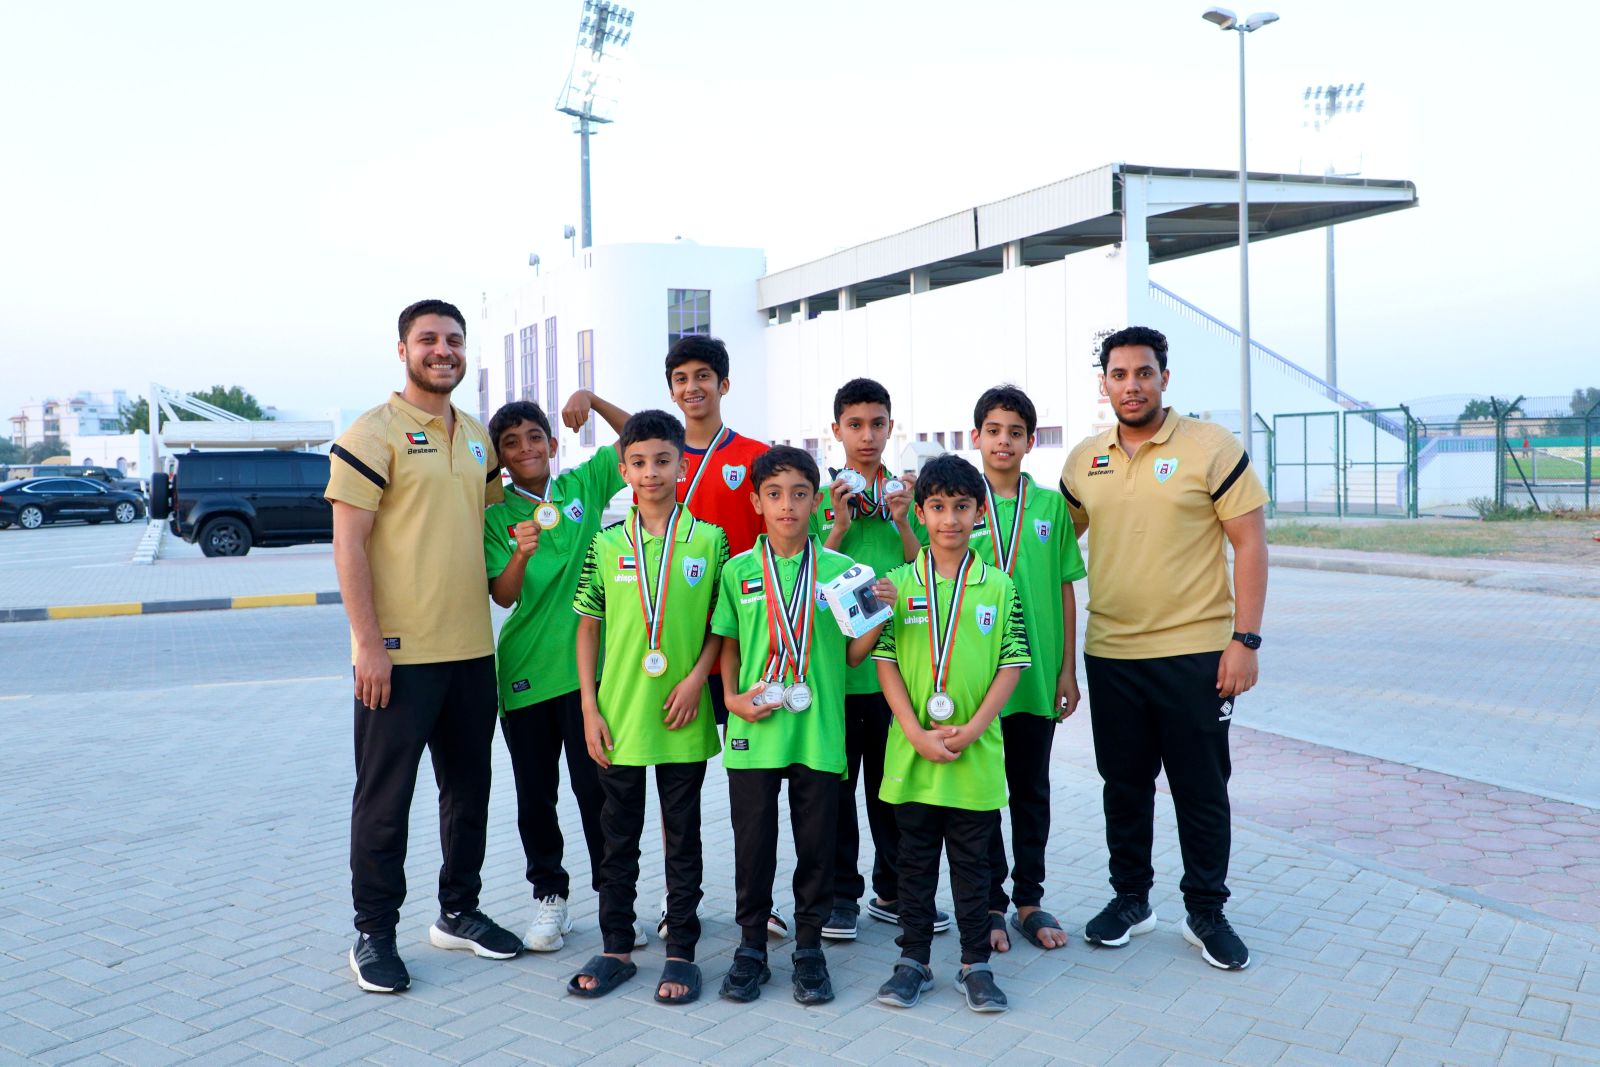 خمس ميداليات ملونة لسباحي نادي دبا الحصن في بطولة المميزين لأندية الشارقة 